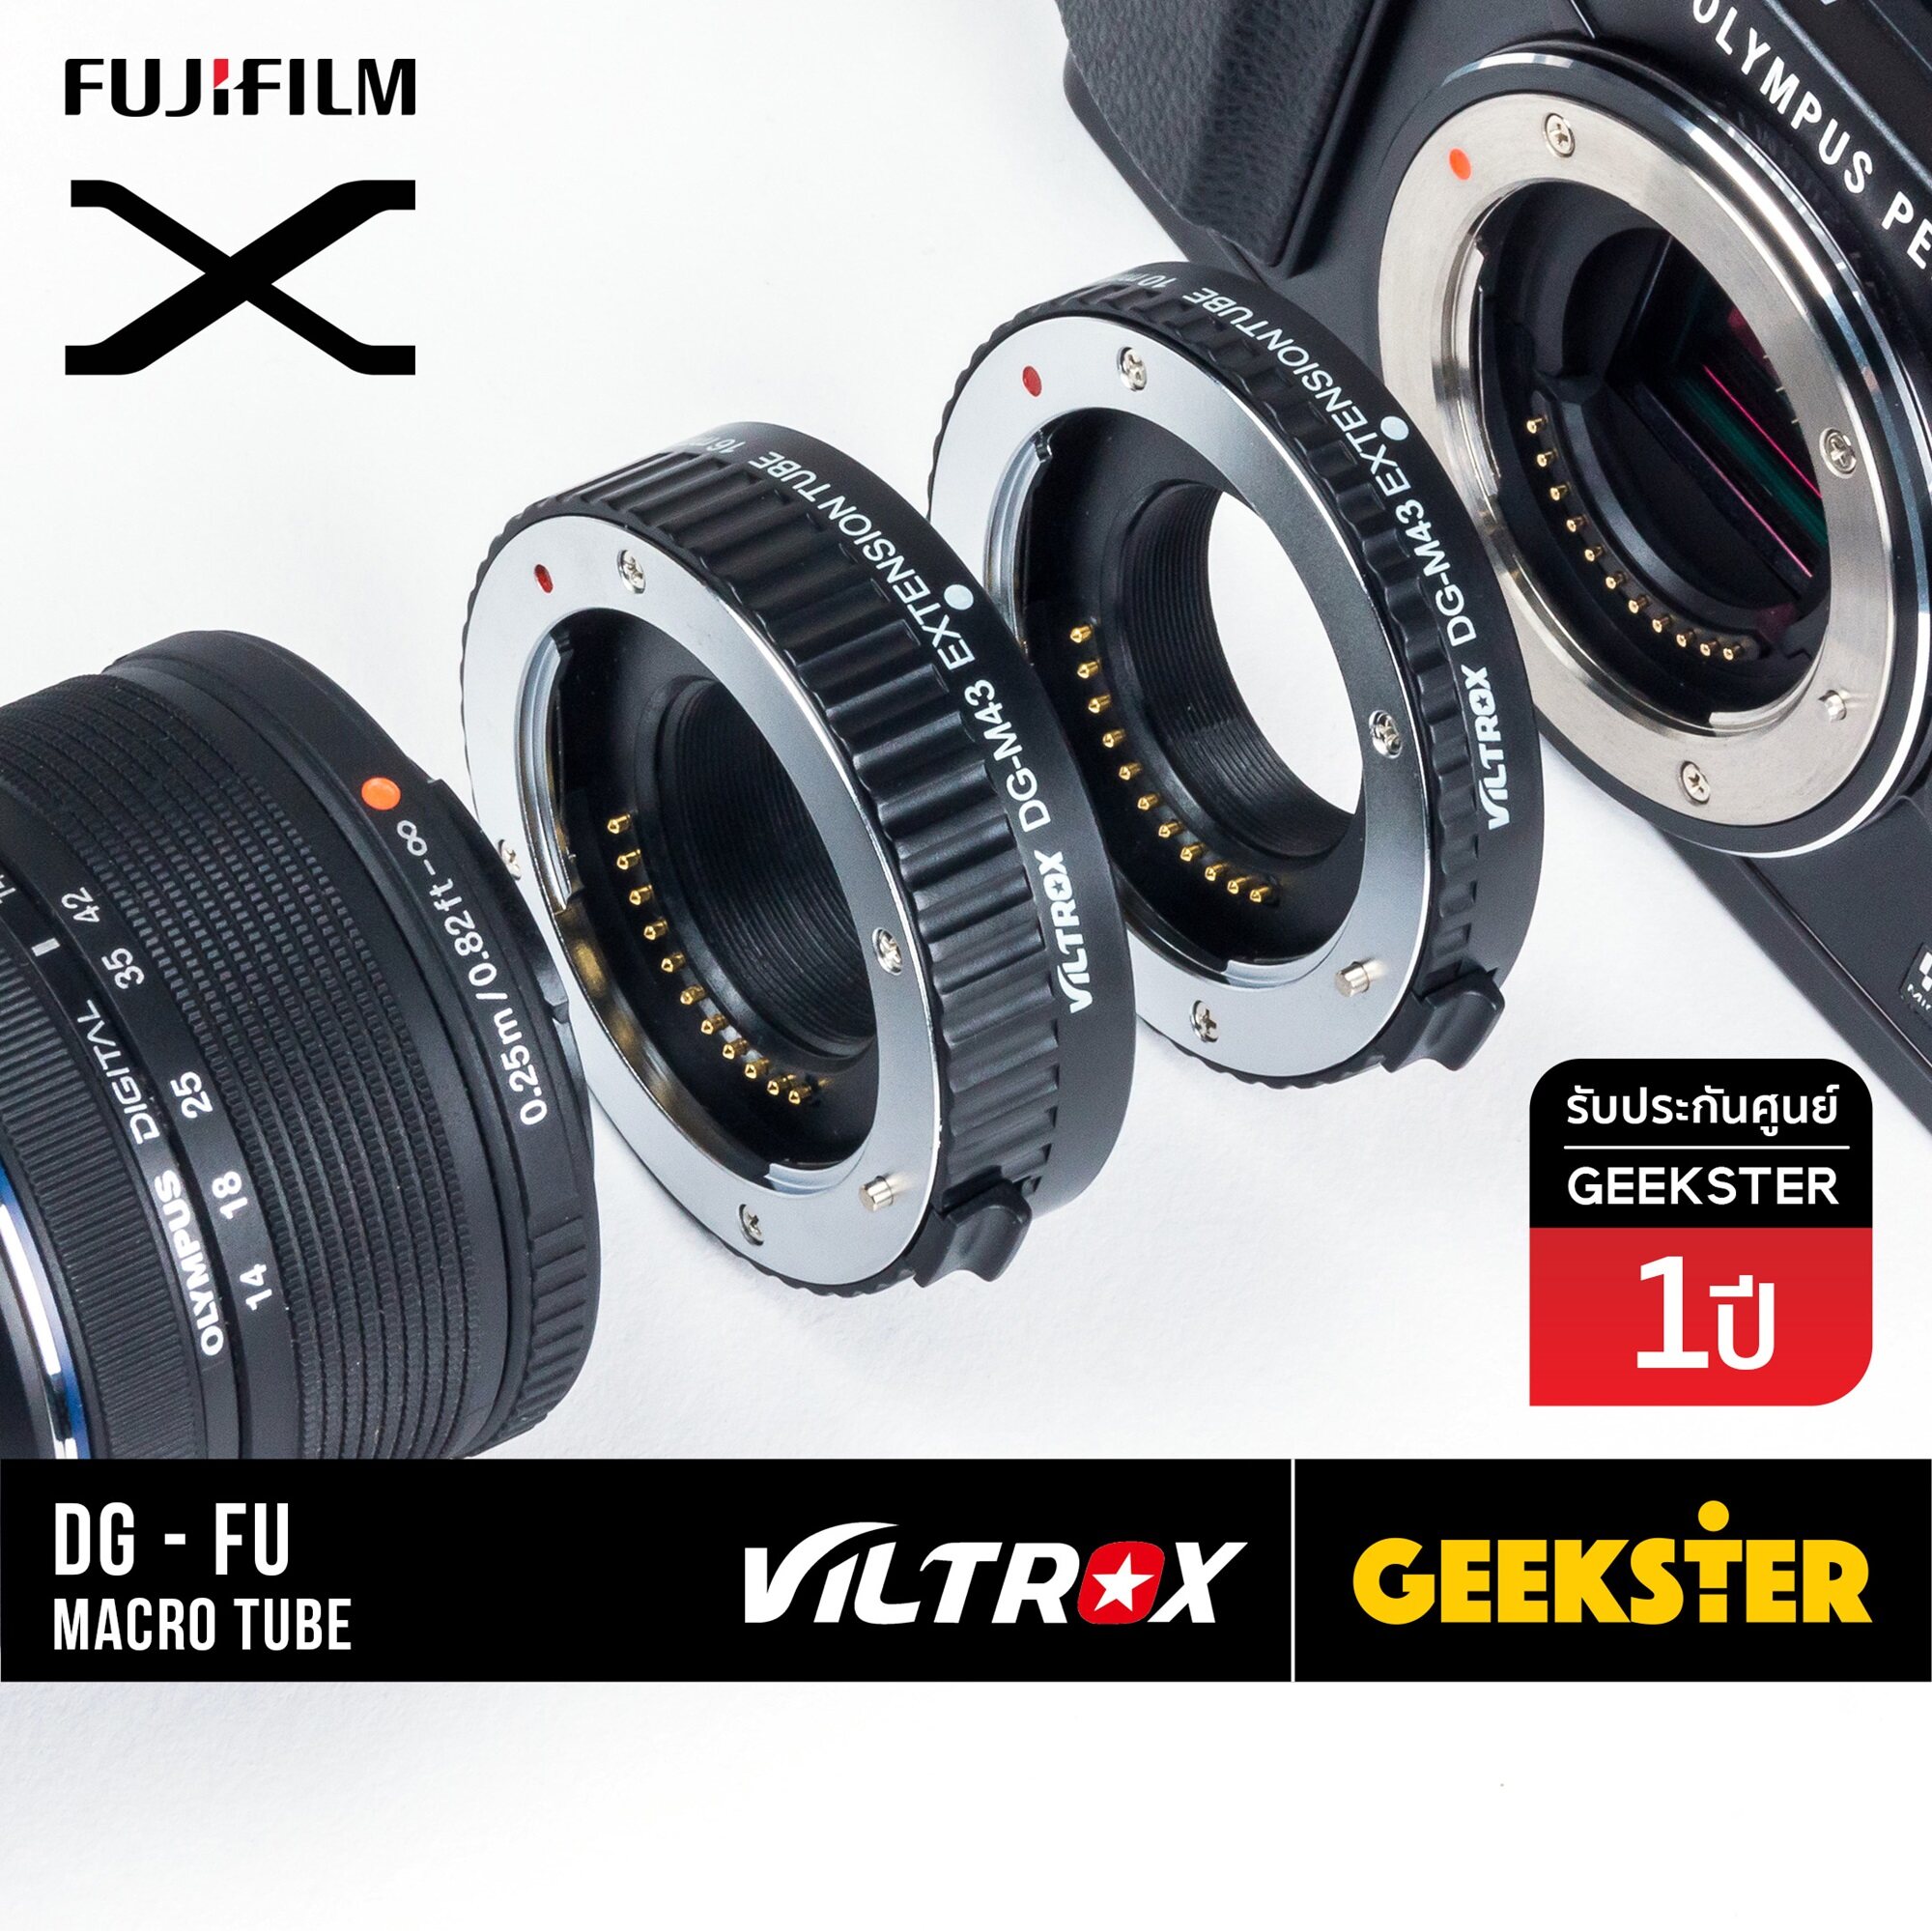 ท่อมาโคร Viltrox Macro Extension Tube สำหรับกล้อง Fuji Mirrorless ทุกรุ่น ( สำหรับถ่า่ยภาพ มาโคร ) ( เพื่อช่วยให้ถ่ายภาพระยะได้ใกล้ขึ้น ) ( ออโต้ โฟกัส ) ( Dg-Fu ) ( X Fx ) ( Geekster ). 